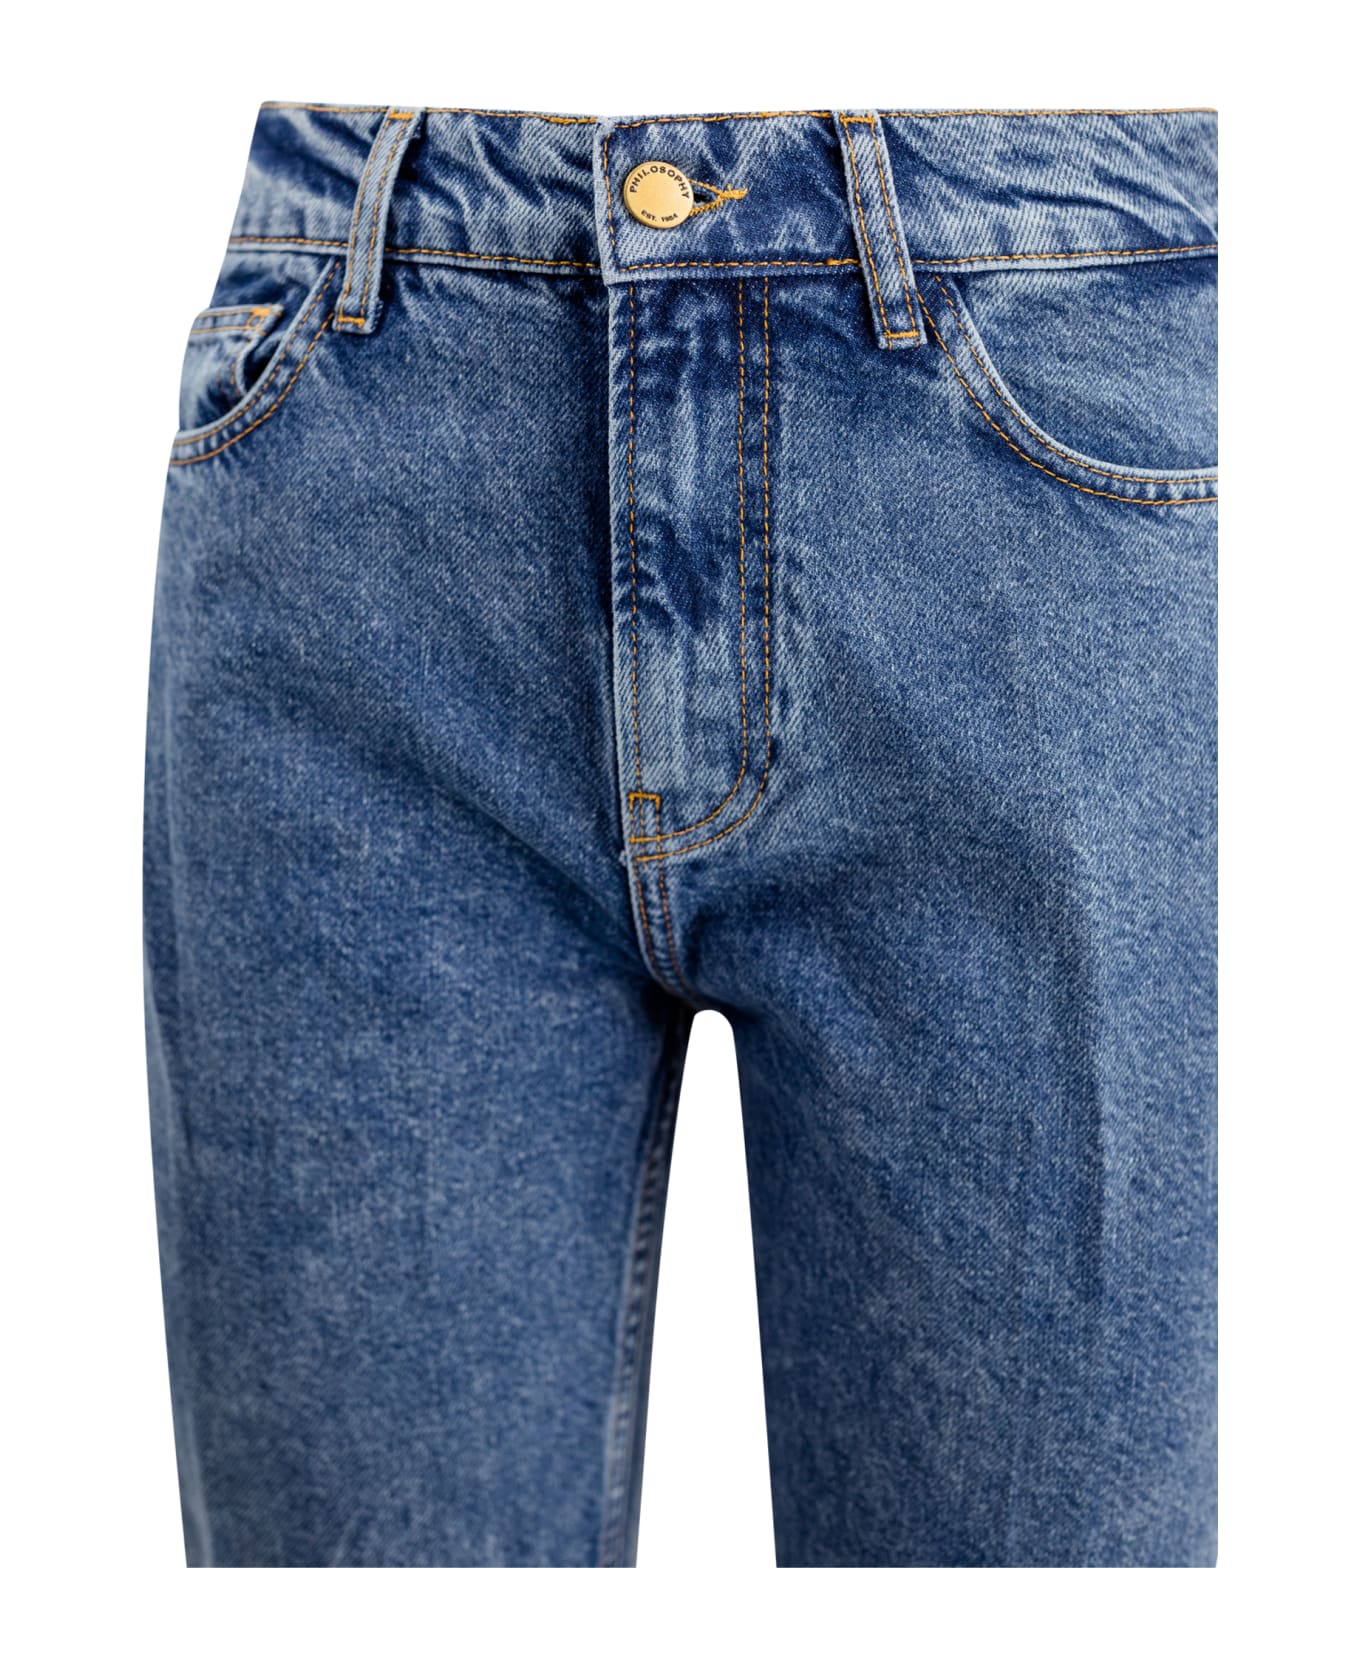 Philosophy di Lorenzo Serafini High-waist Cropped Slim-cut Jeans - Denim